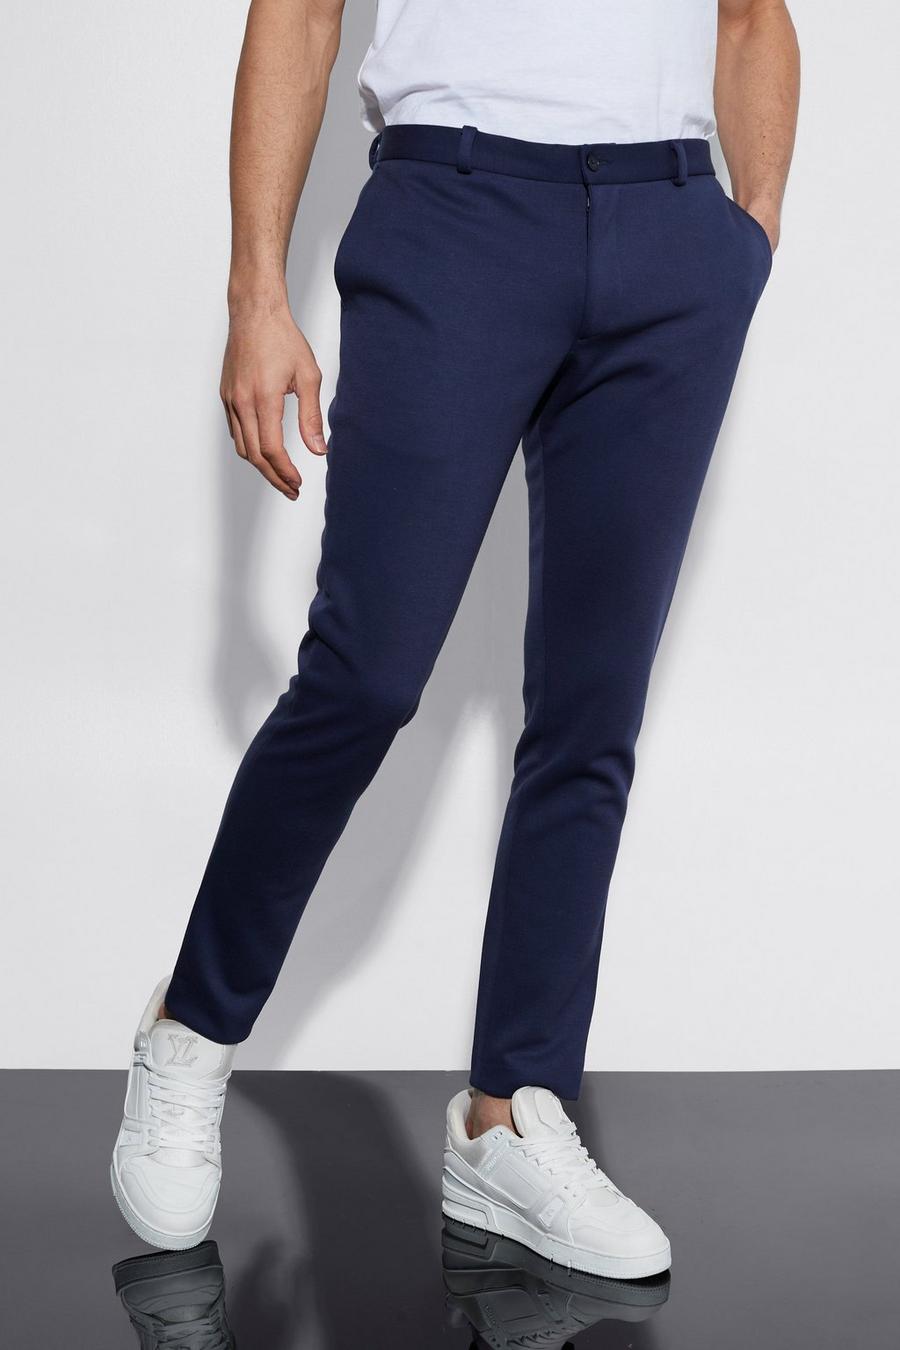 Pantaloni Skinny Fit in jersey pesante parzialmente elasticizzato, Navy blu oltremare